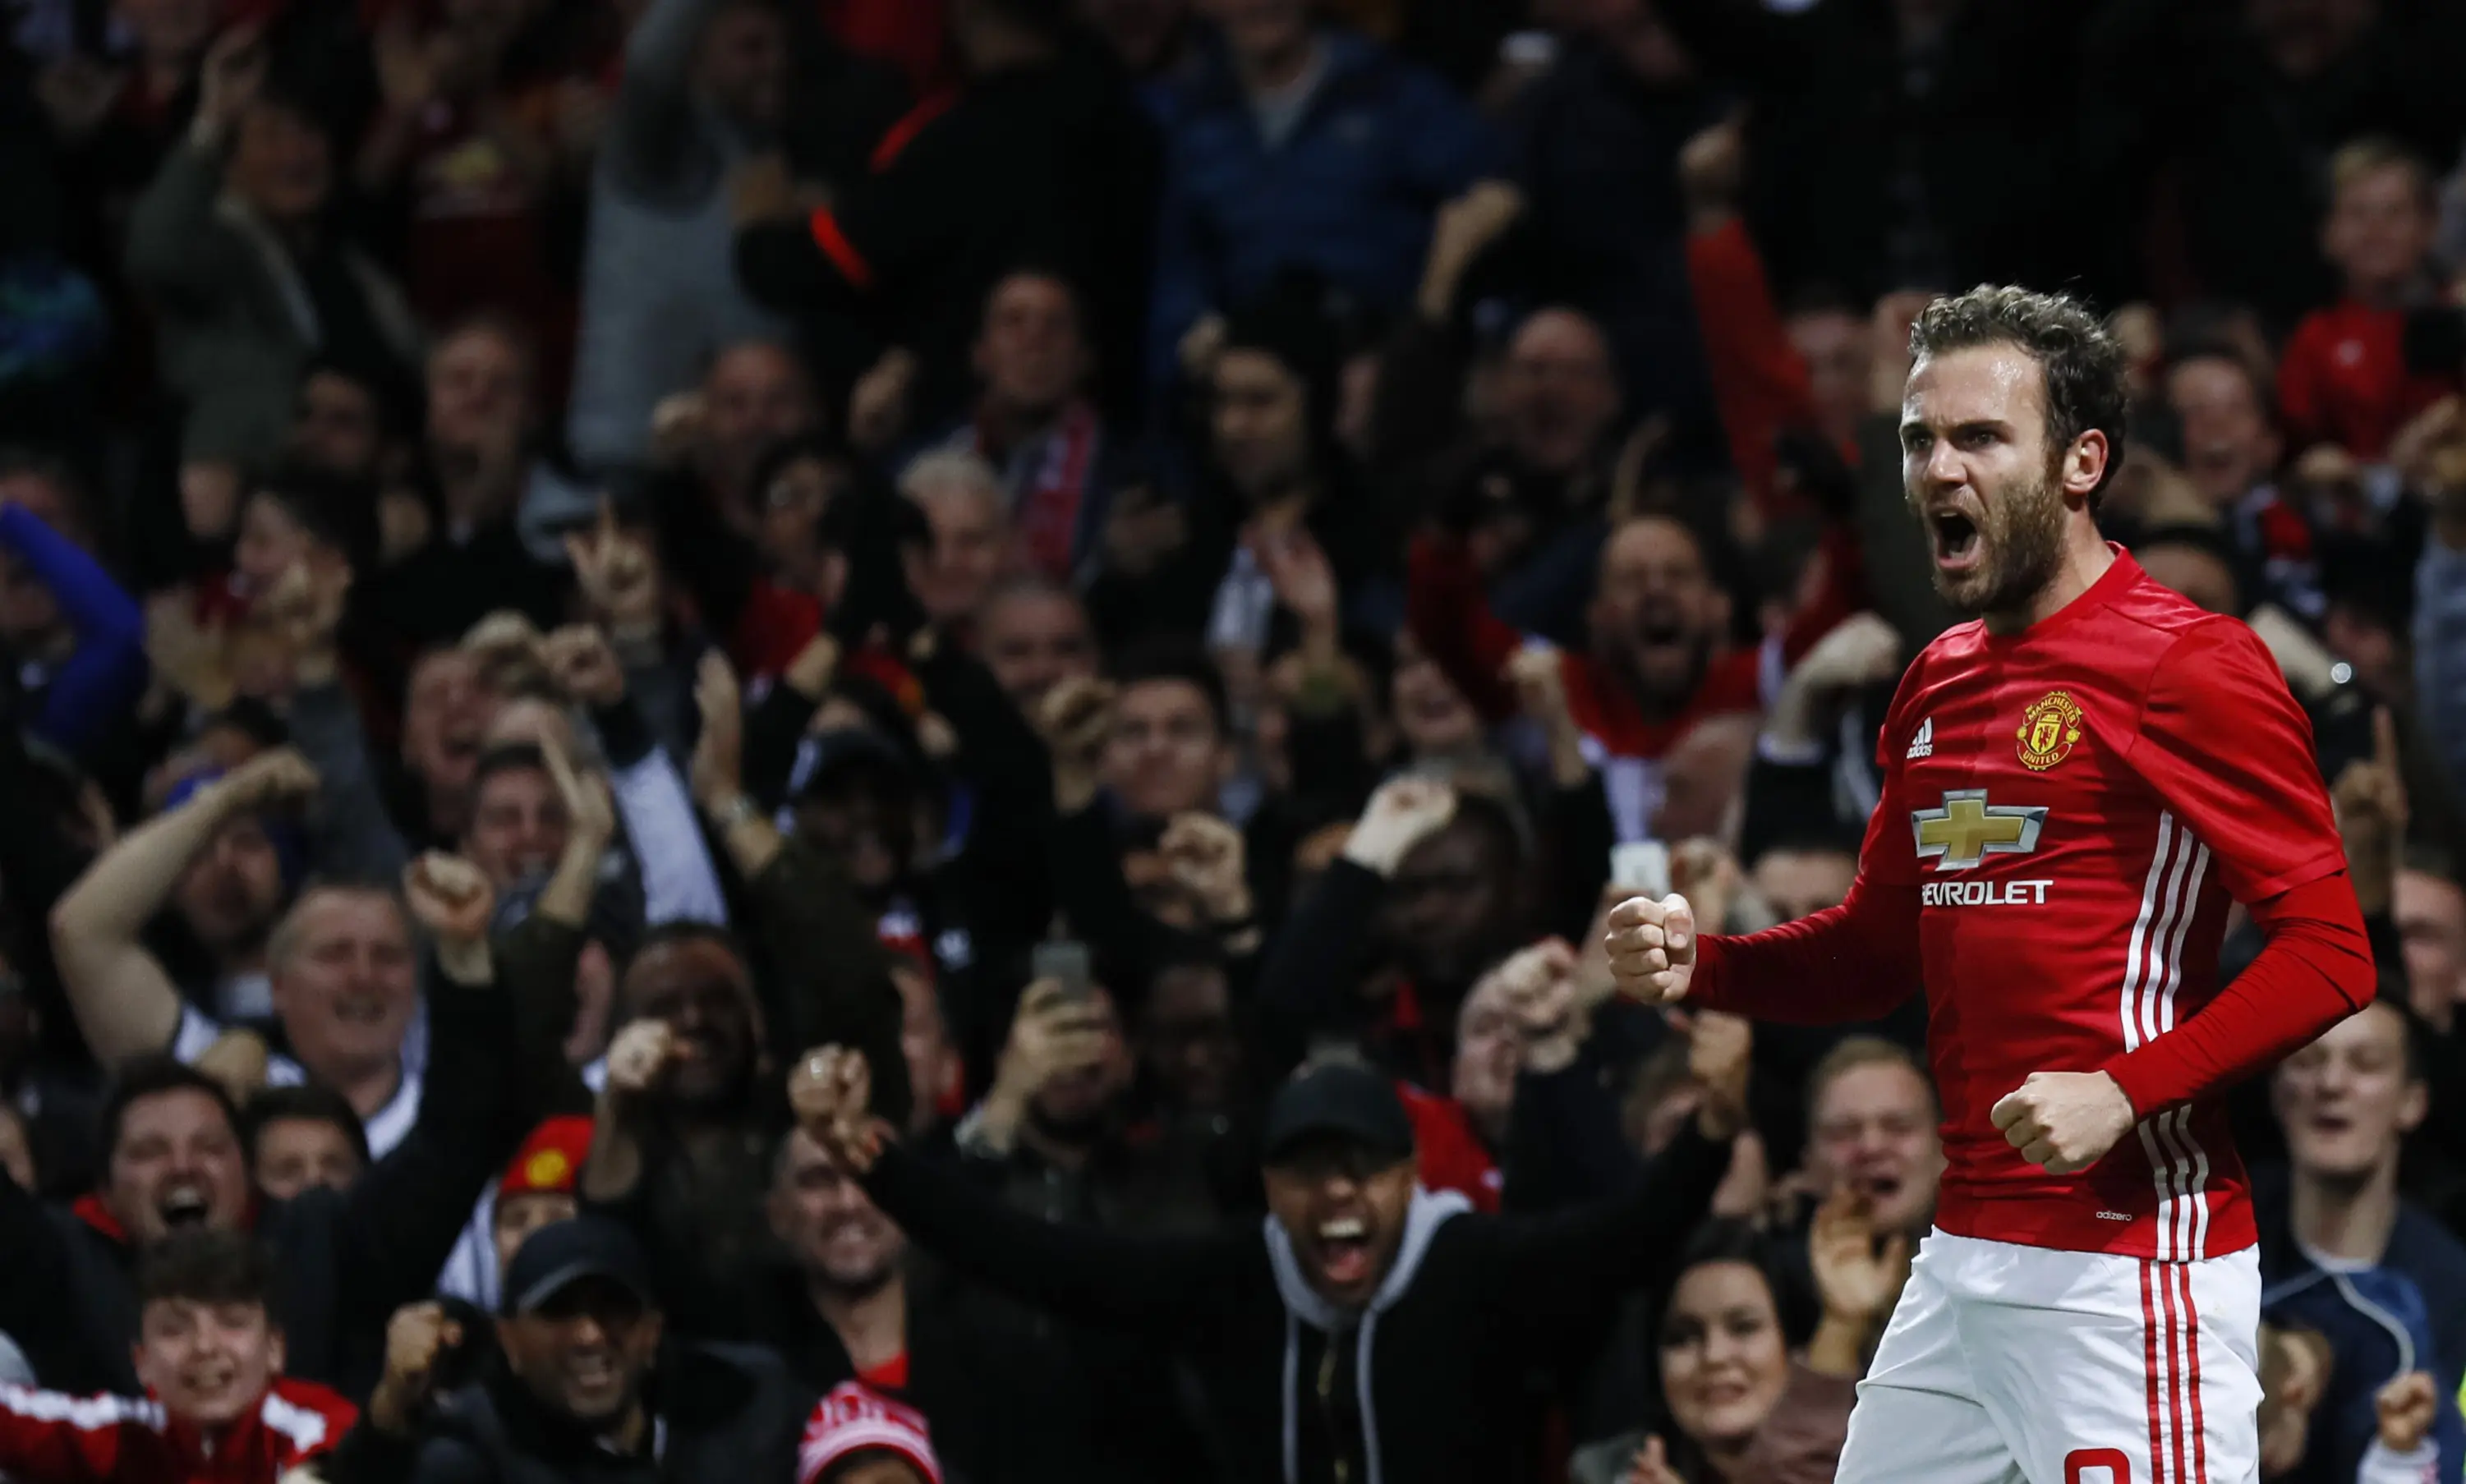 Gelandang Manchester United Juan Mata (Reuters / Jason Cairnduff)